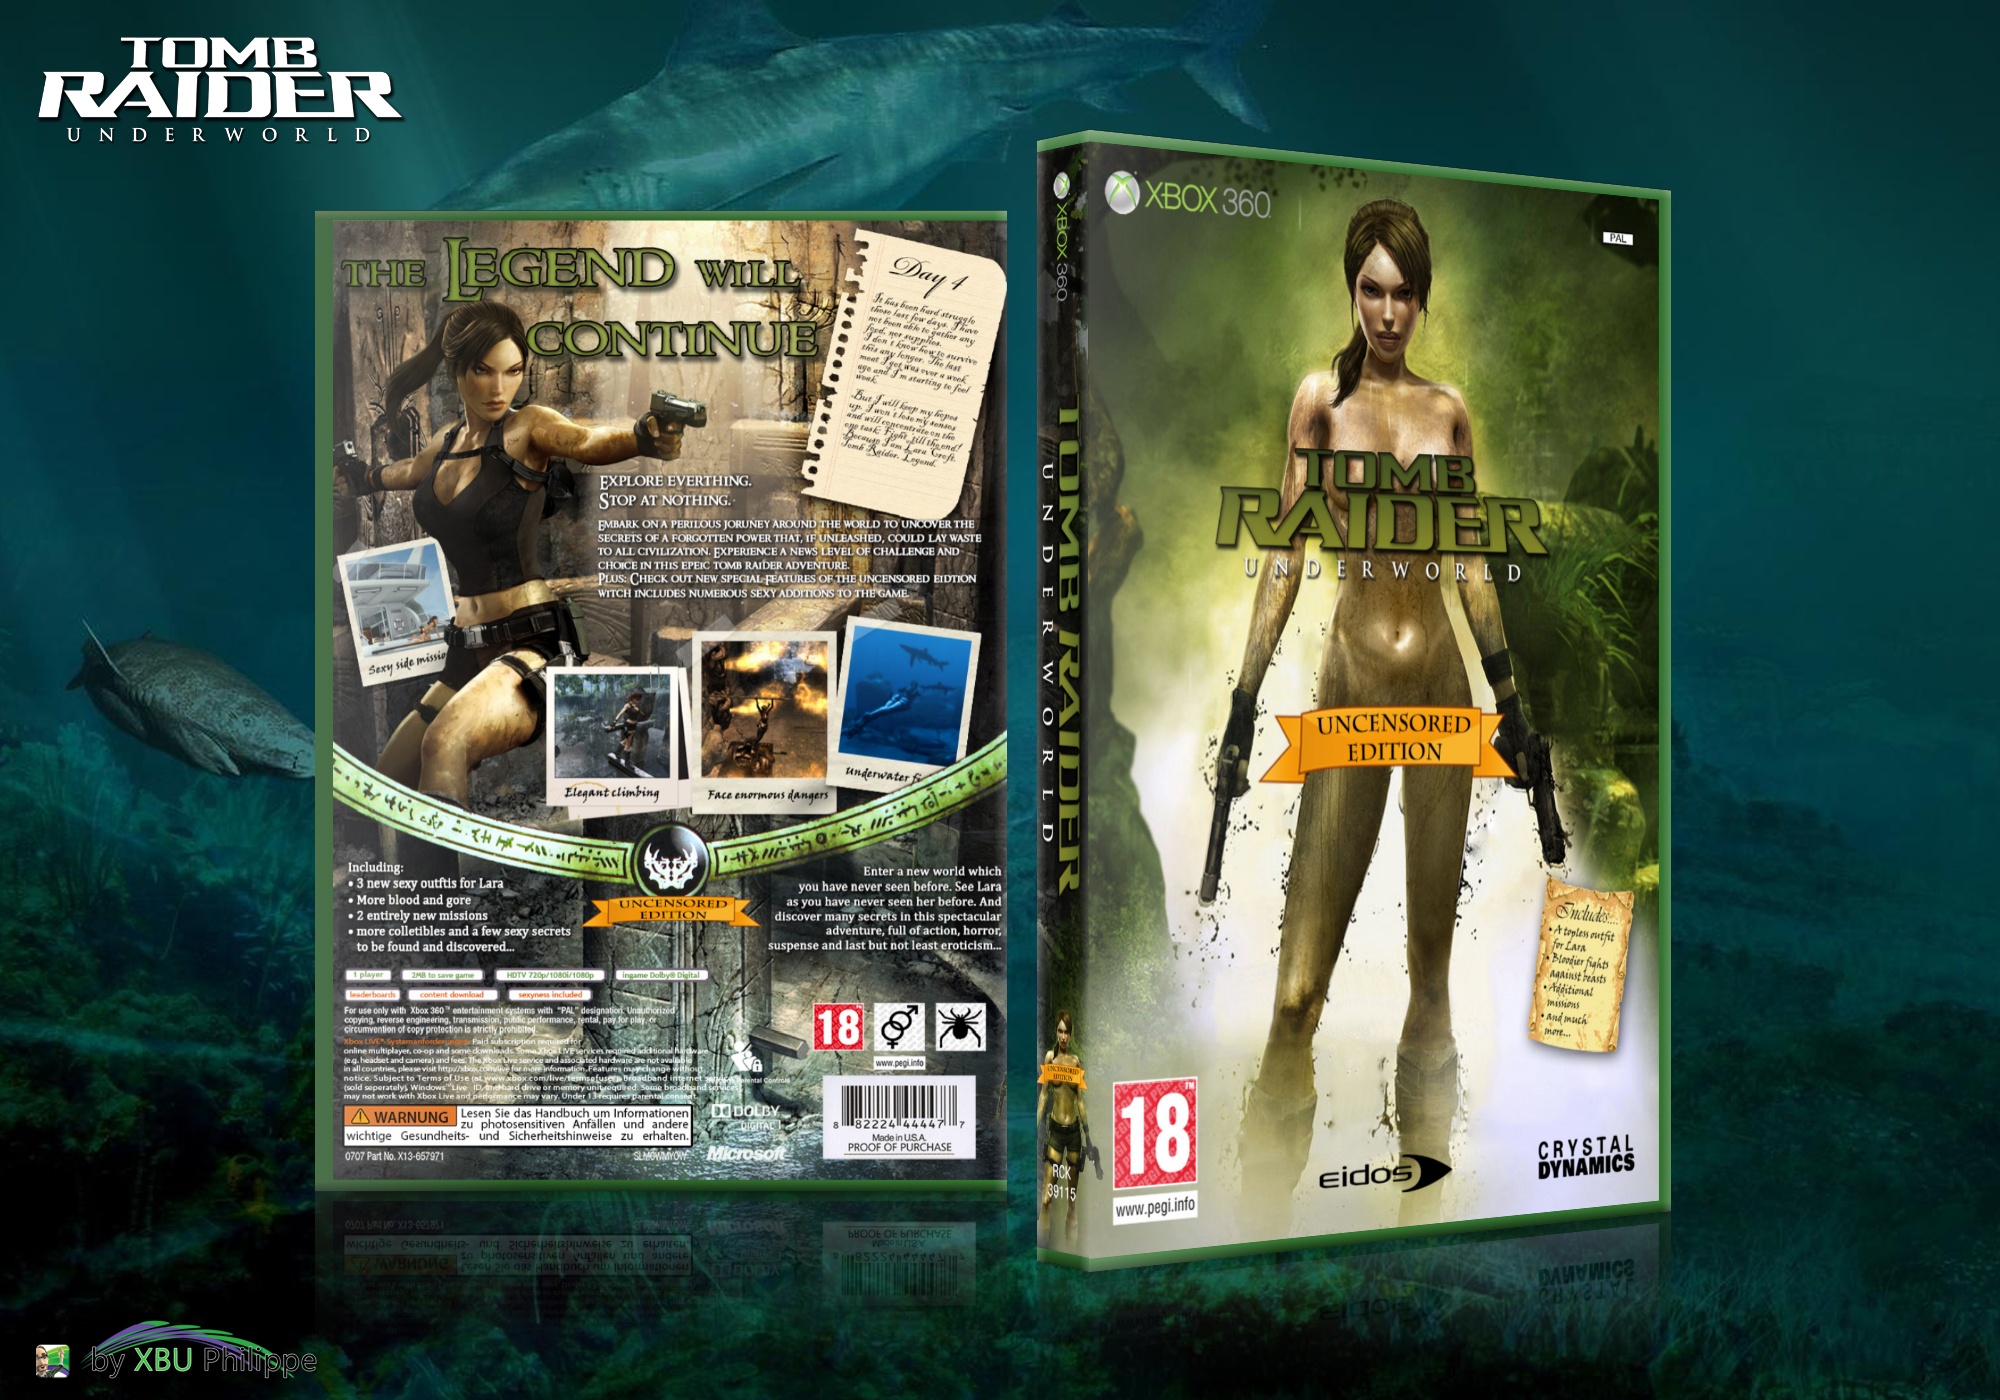 Tomb Raider Underworld - Uncensored Edition box cover